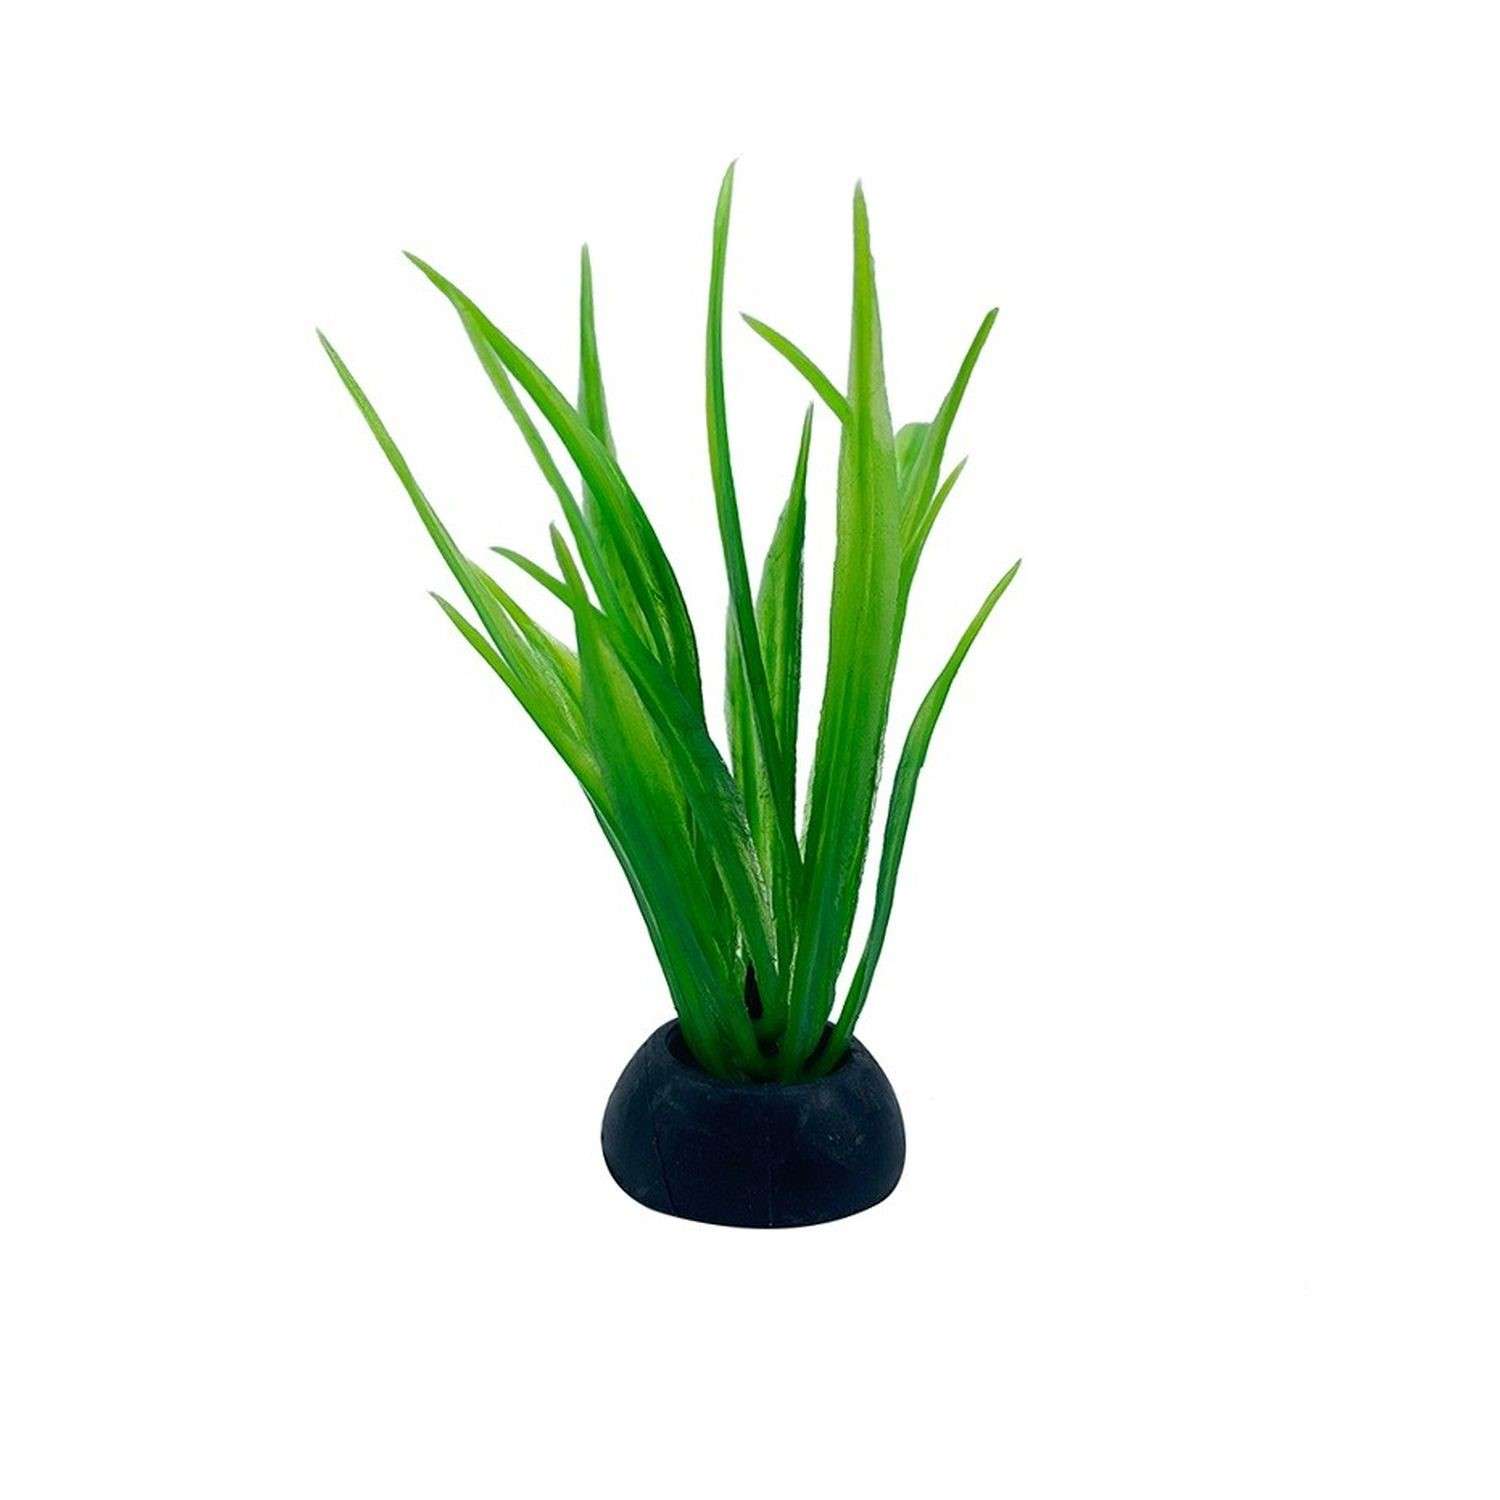 Аквариумное растение Rabizy кустик 2.5х5 см - фото 2